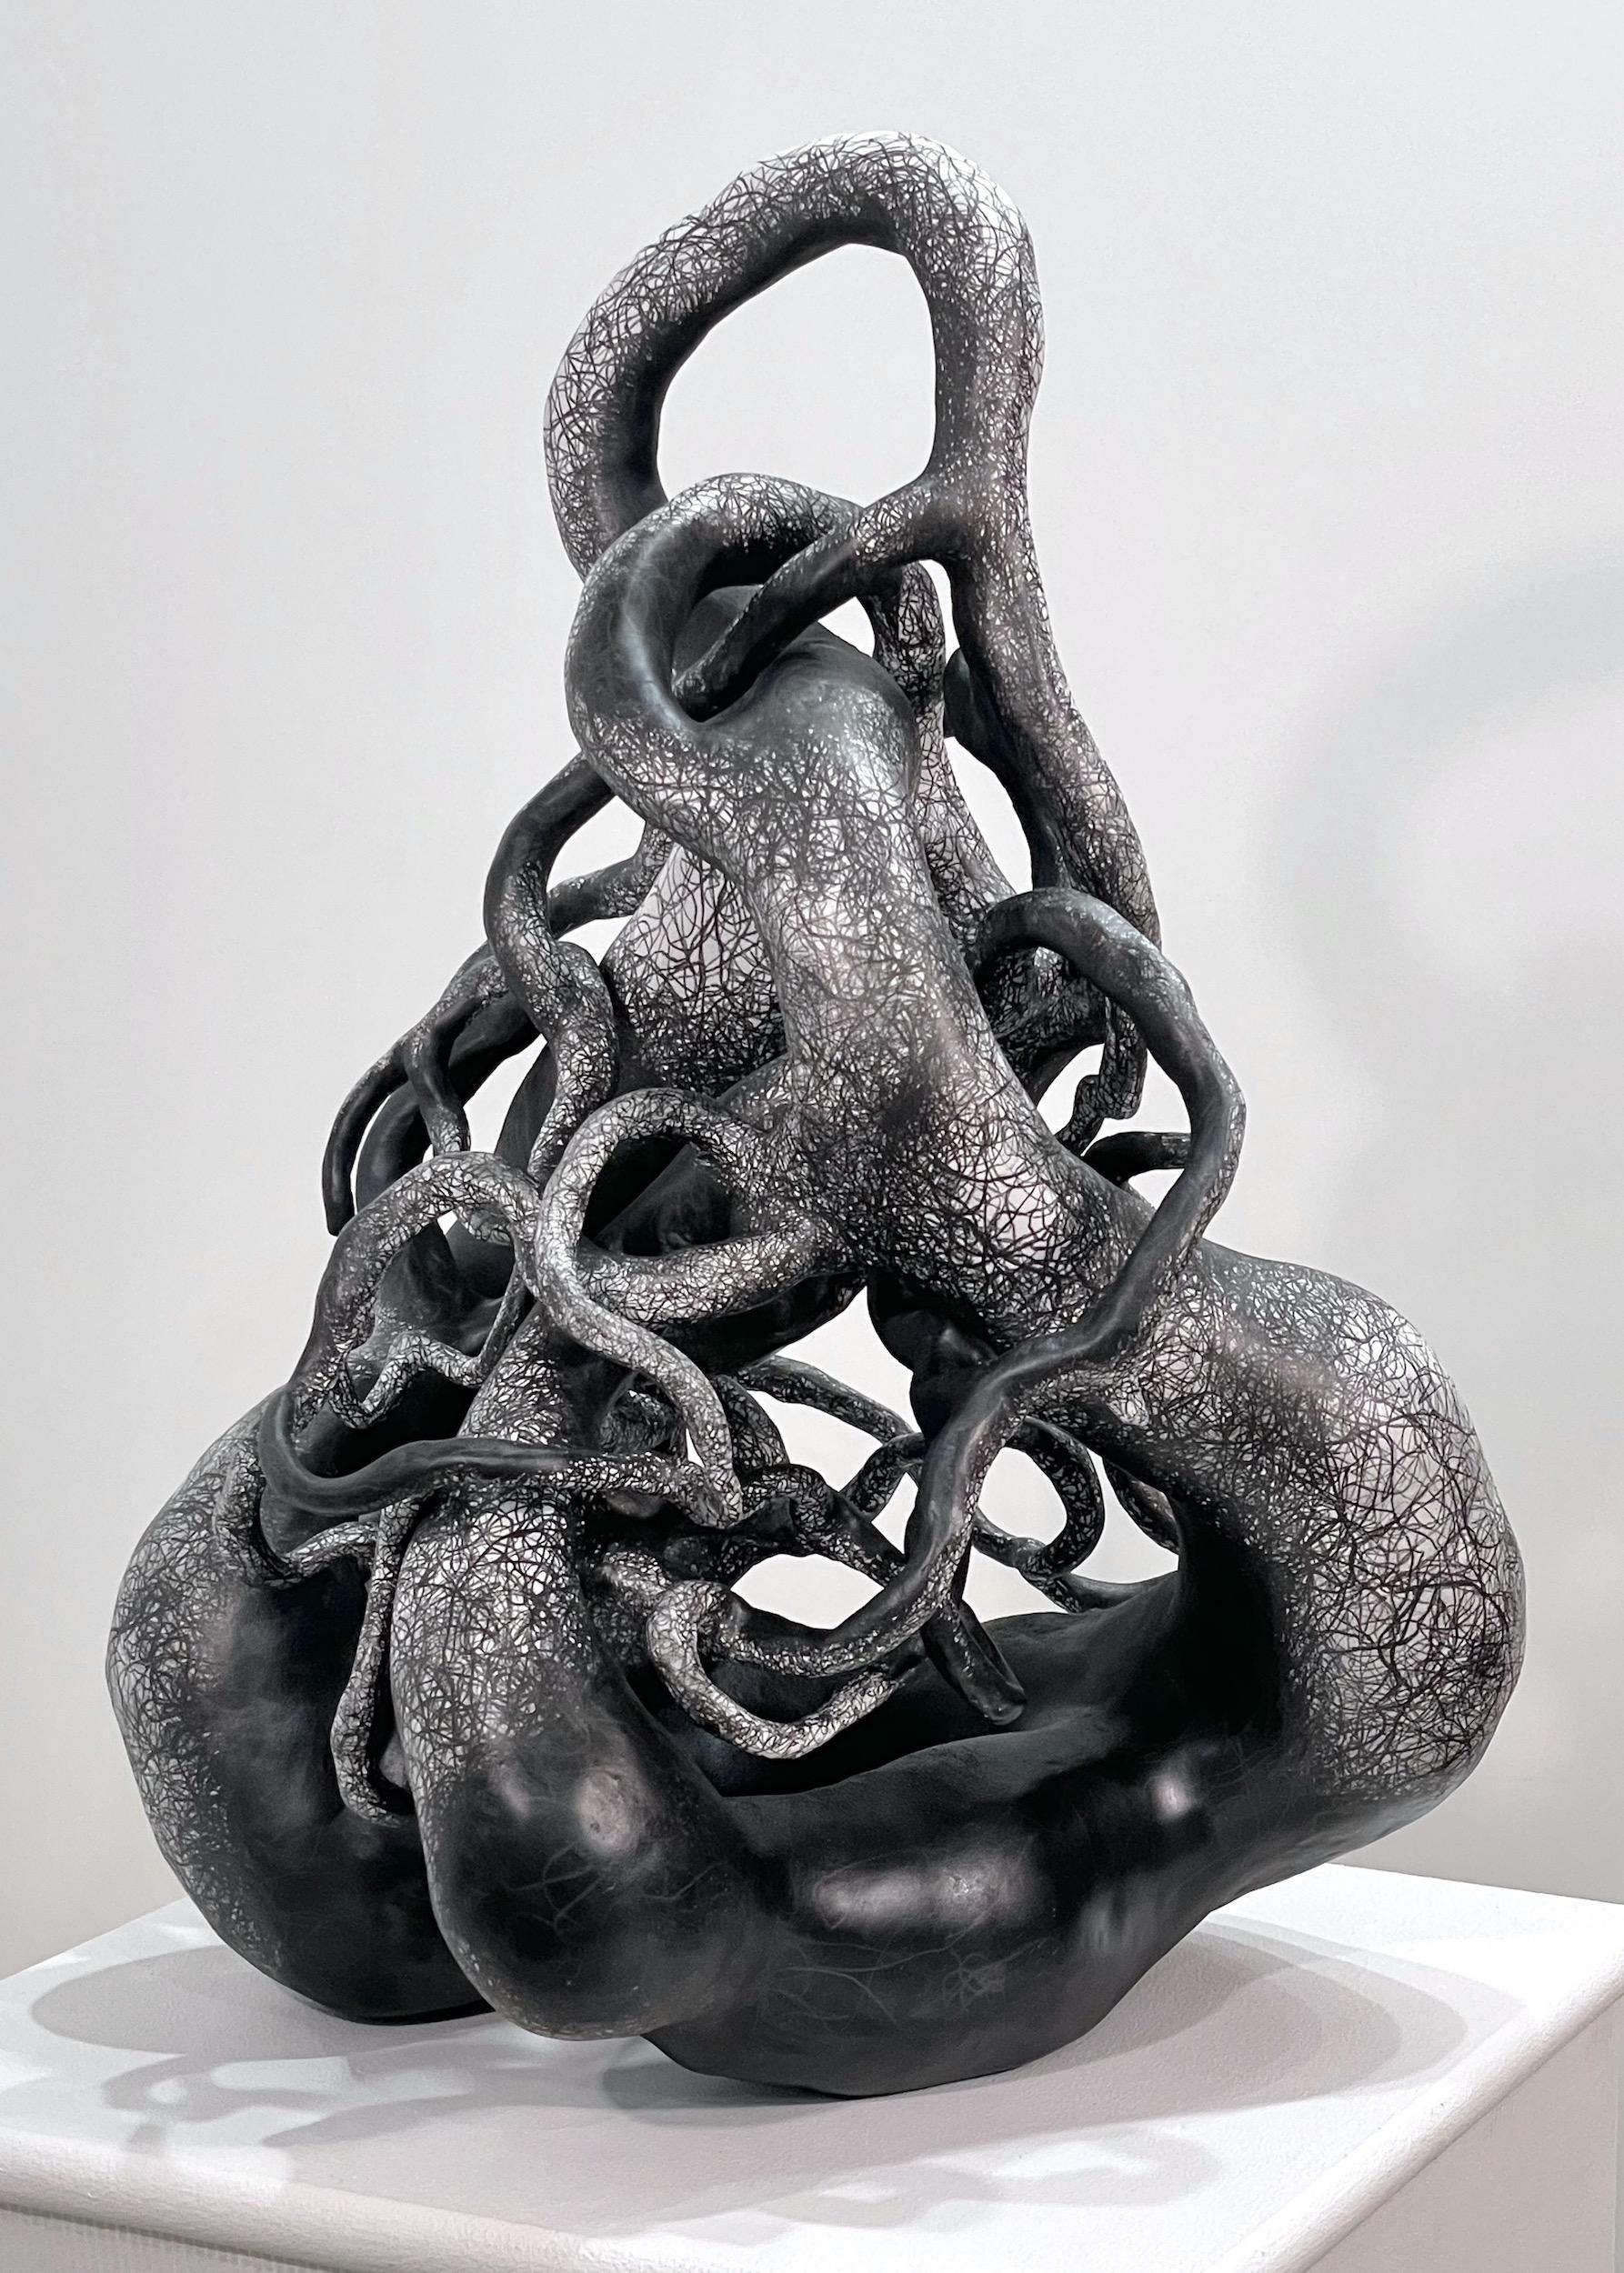 Judi Tavill Abstract Sculpture - PROBE, black organic form ceramic sculpture, mimics nature, branches